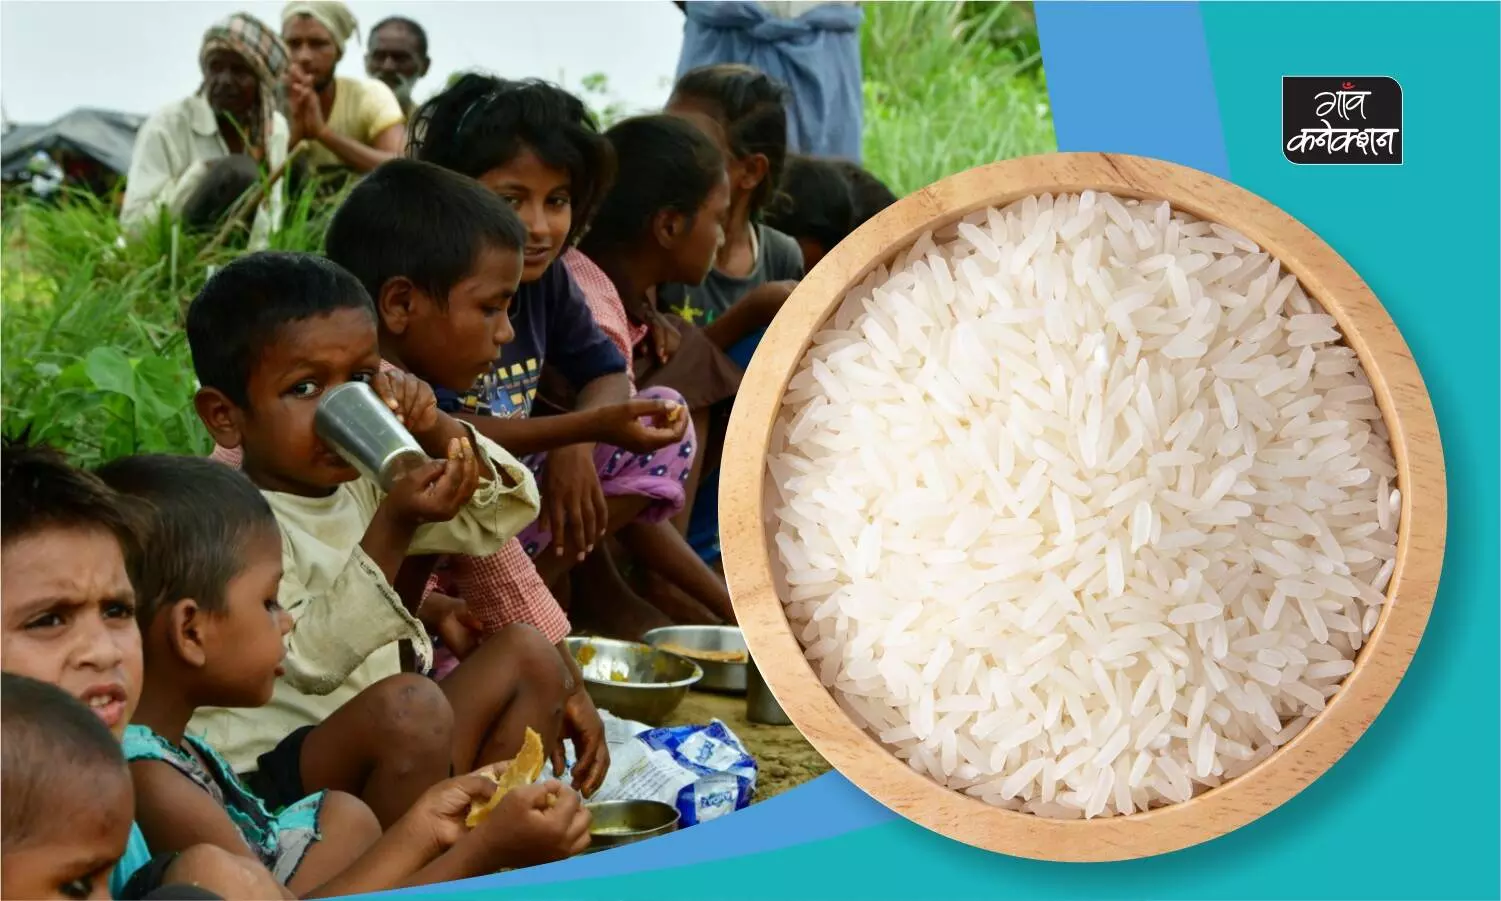 चावल फोर्टिफिकेशन: कुपोषण से निपटने के लिए आंगनबाड़ी और मिड डे मील में दिए जा रहे फोर्टिफाइड चावल